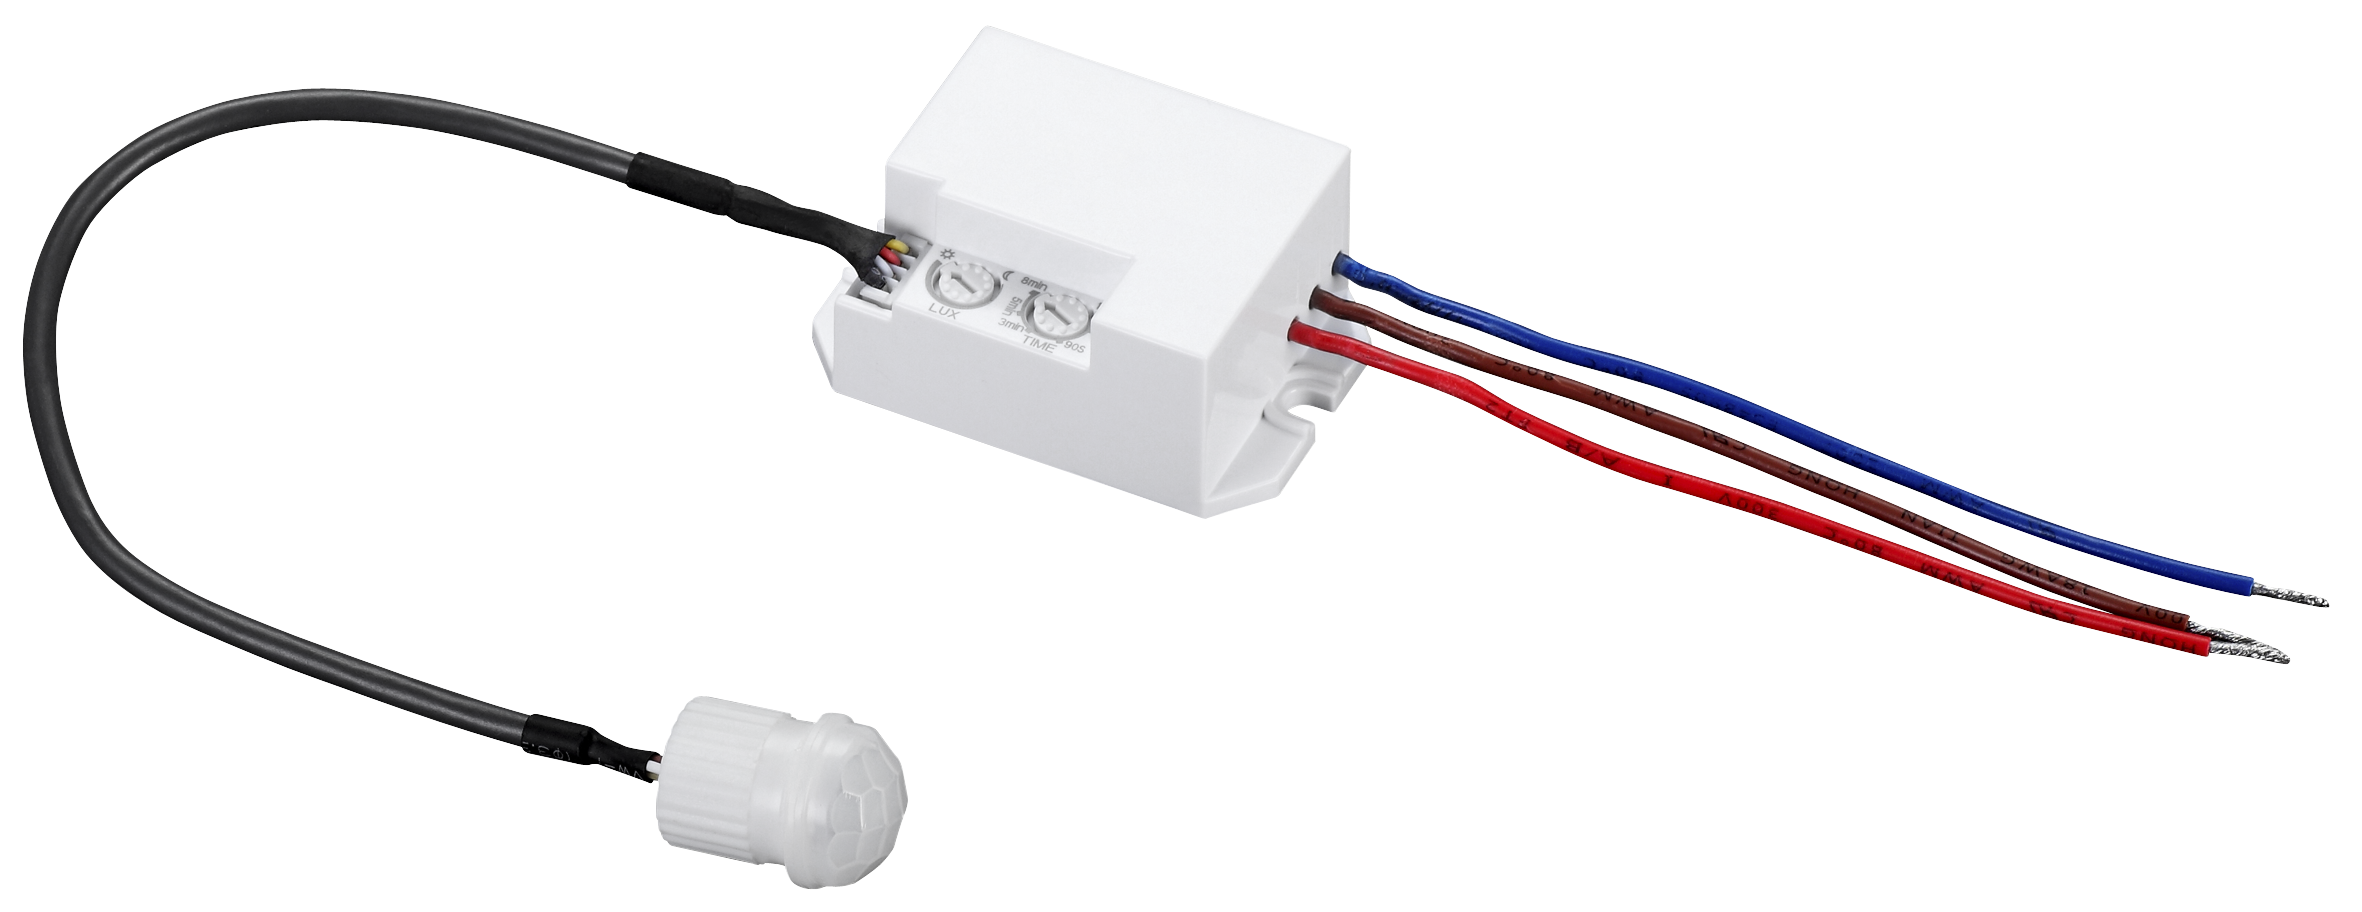 IR Einbau-Bewegungsmelder McShine ''LX-635'', 360°, 230V / 800W, weiß, LED geeignet